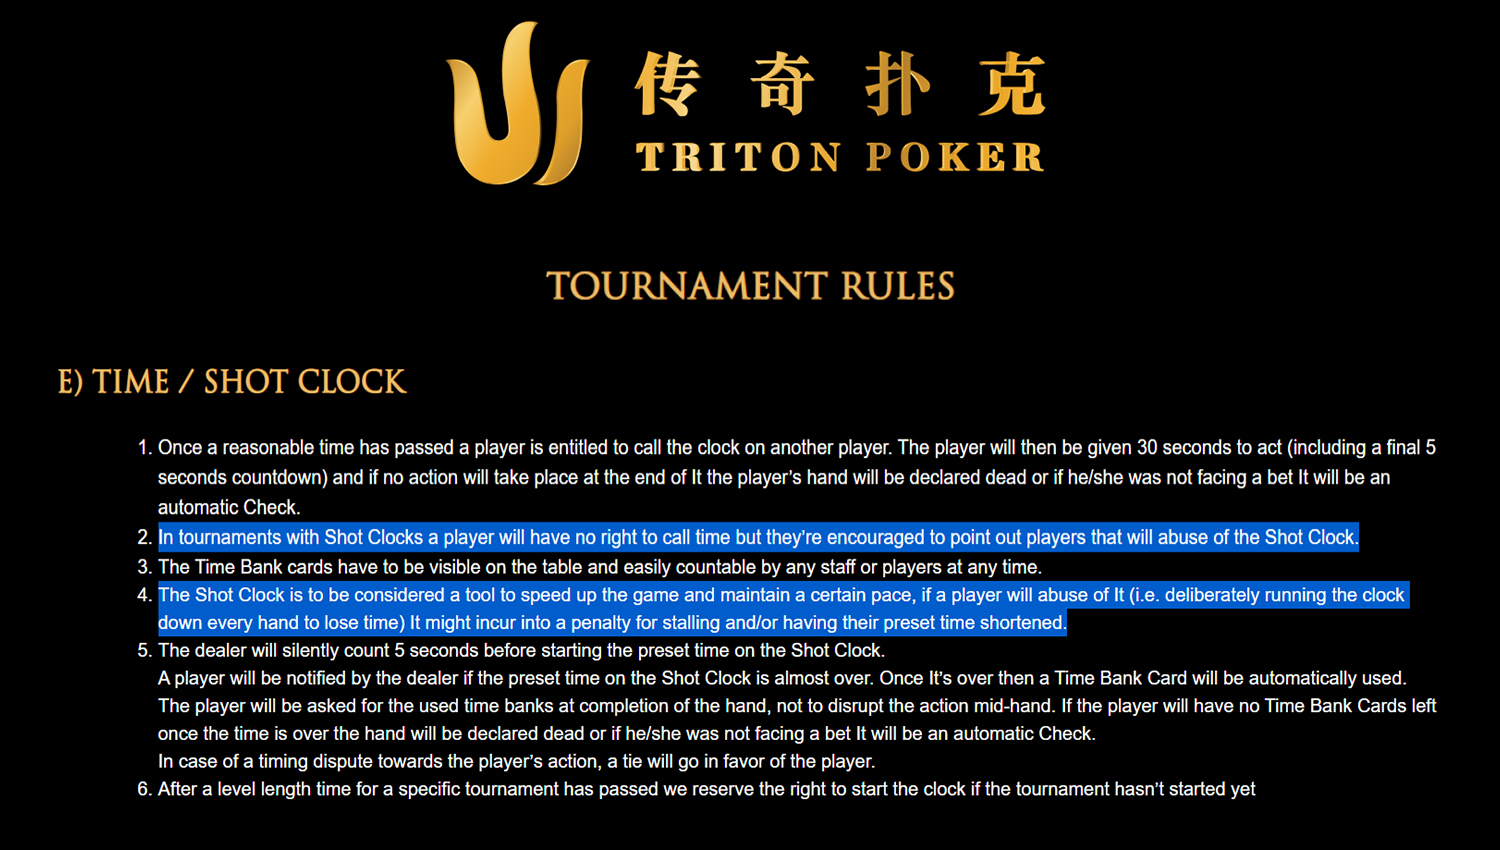 Выдержка из актуальных правил Triton Poker, 2021 год.